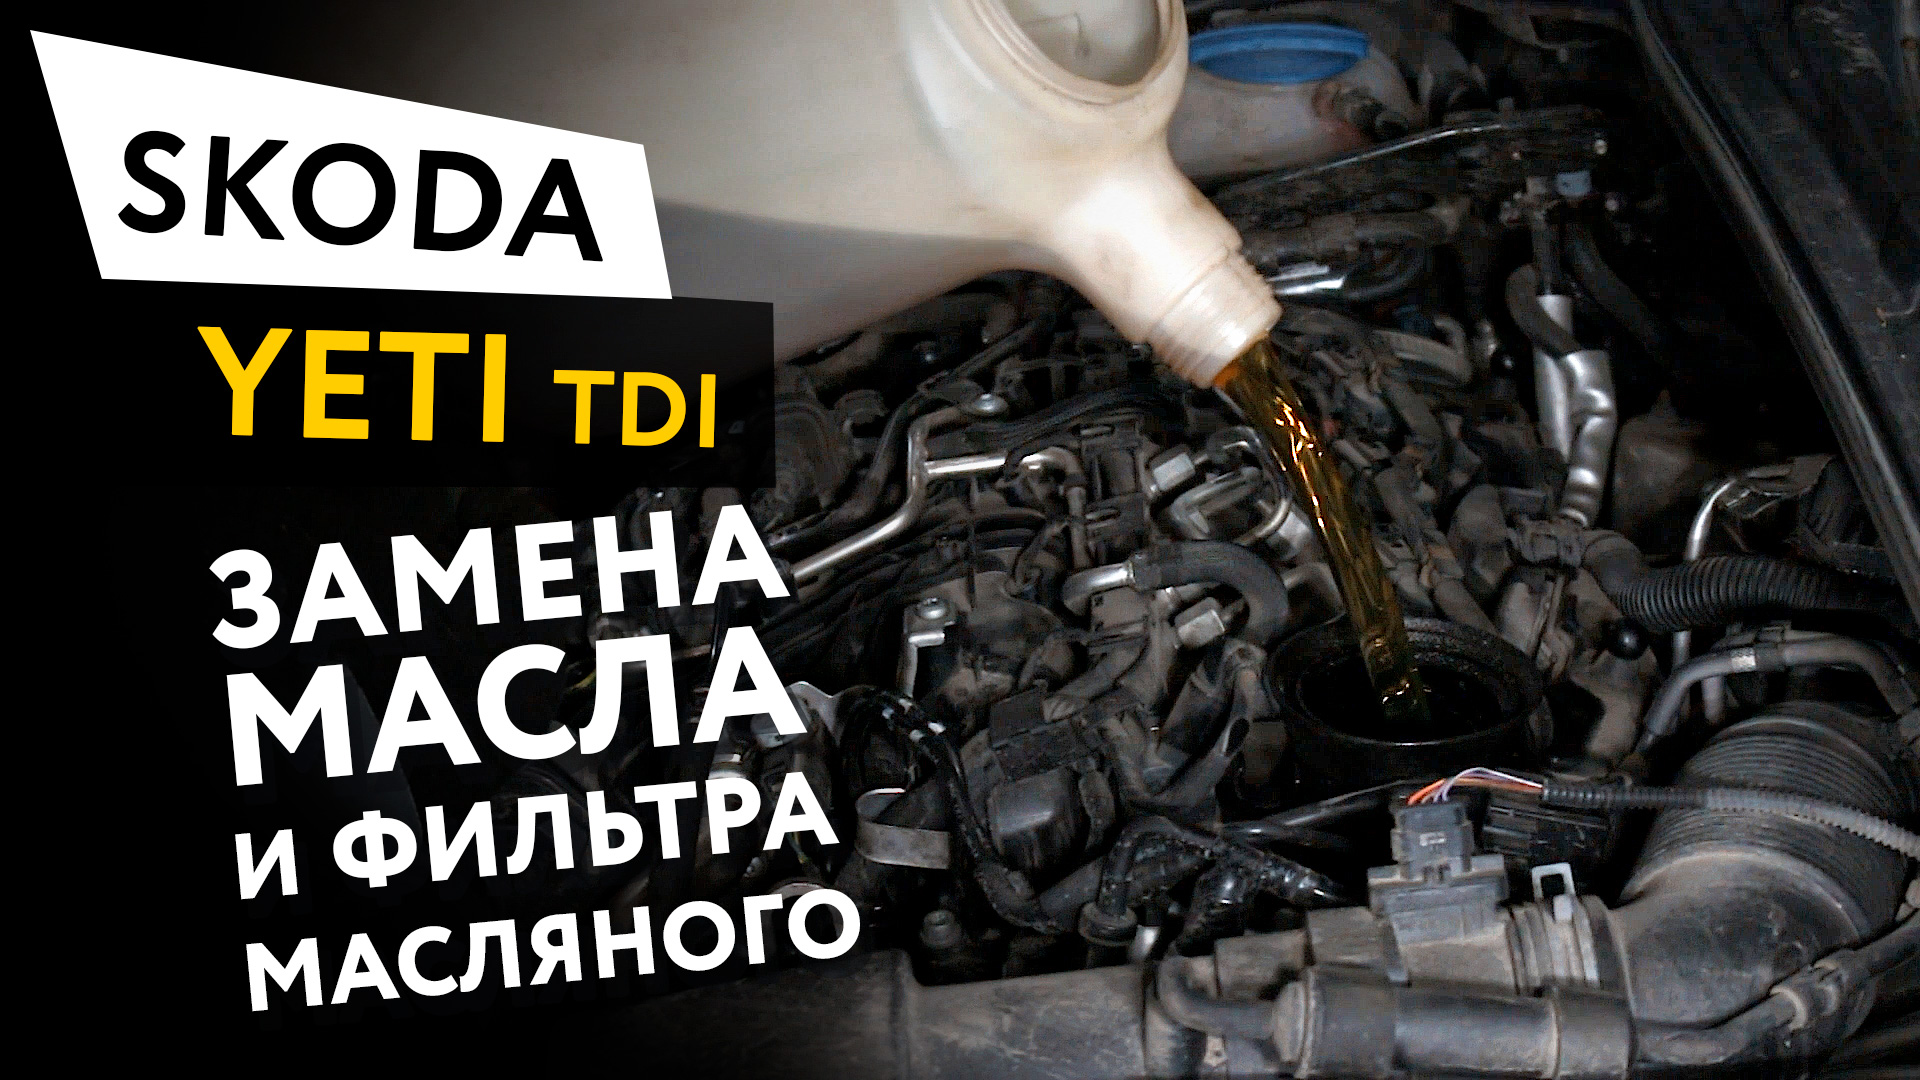 Шкода йети масло в двигатель. Skoda Yeti 2.0 TDI фильтр масляный. Замена масла в двигателе Шкода Йети 1.8. Фильтра на шкоду Йети дизель. Вакуумная замена масла в двигателе.